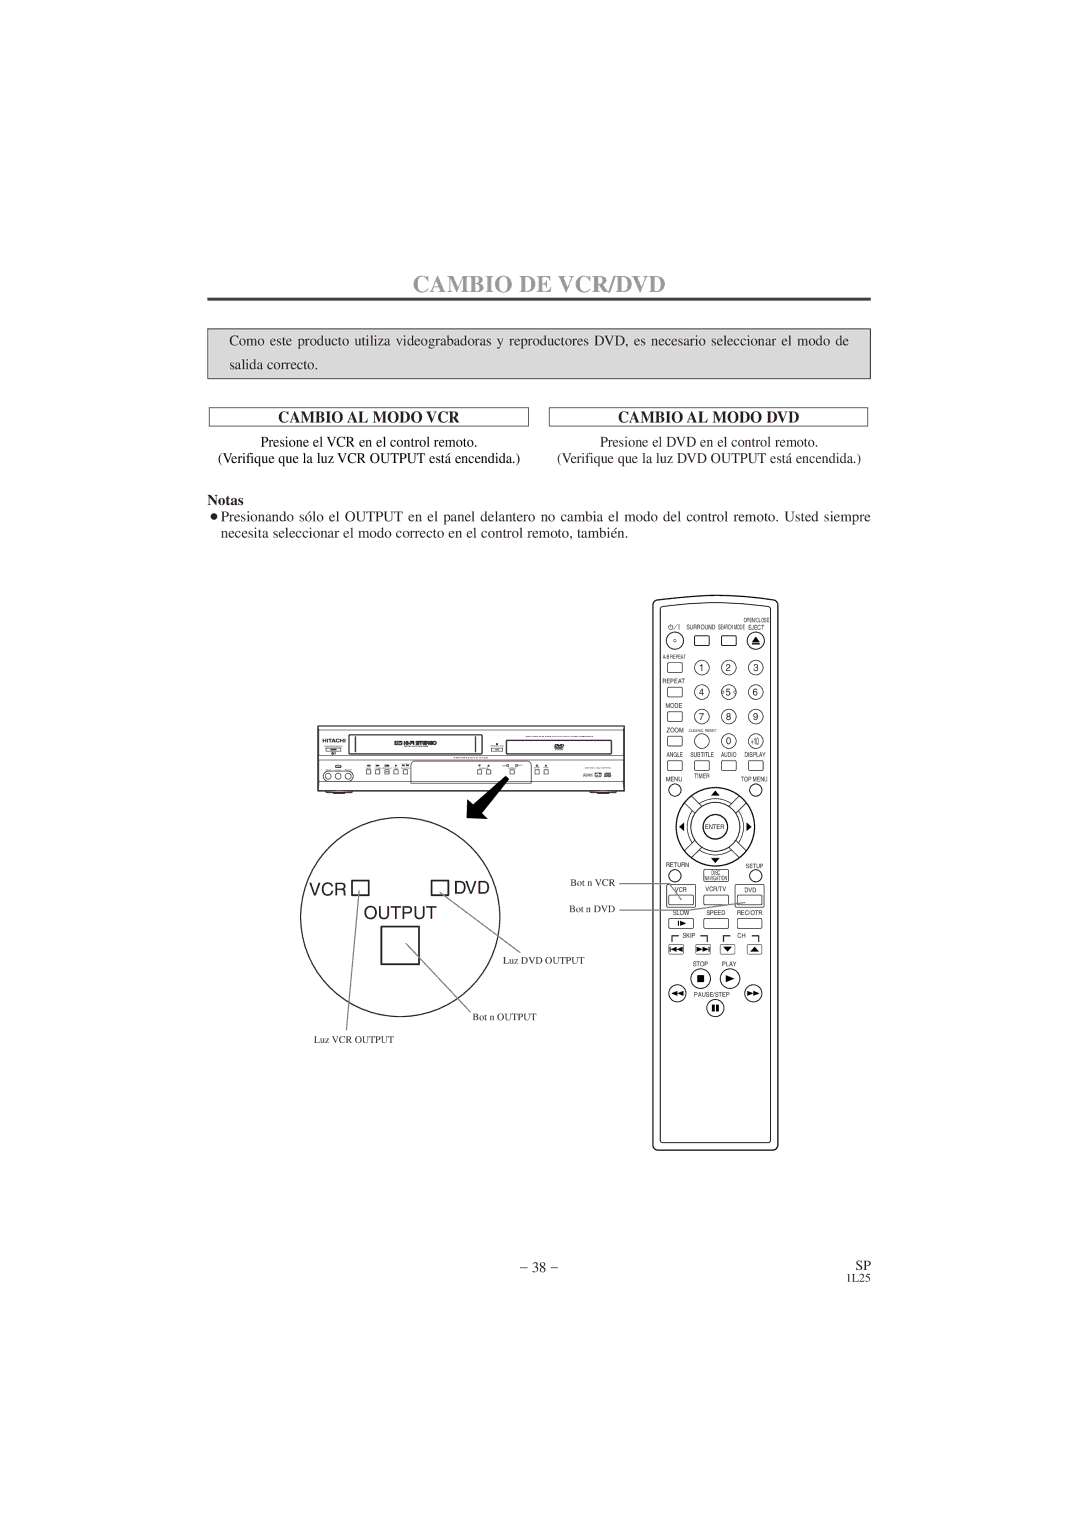 Hitachi DV PF74U instruction manual Cambio DE VCR/DVD, Cambio AL Modo DVD 